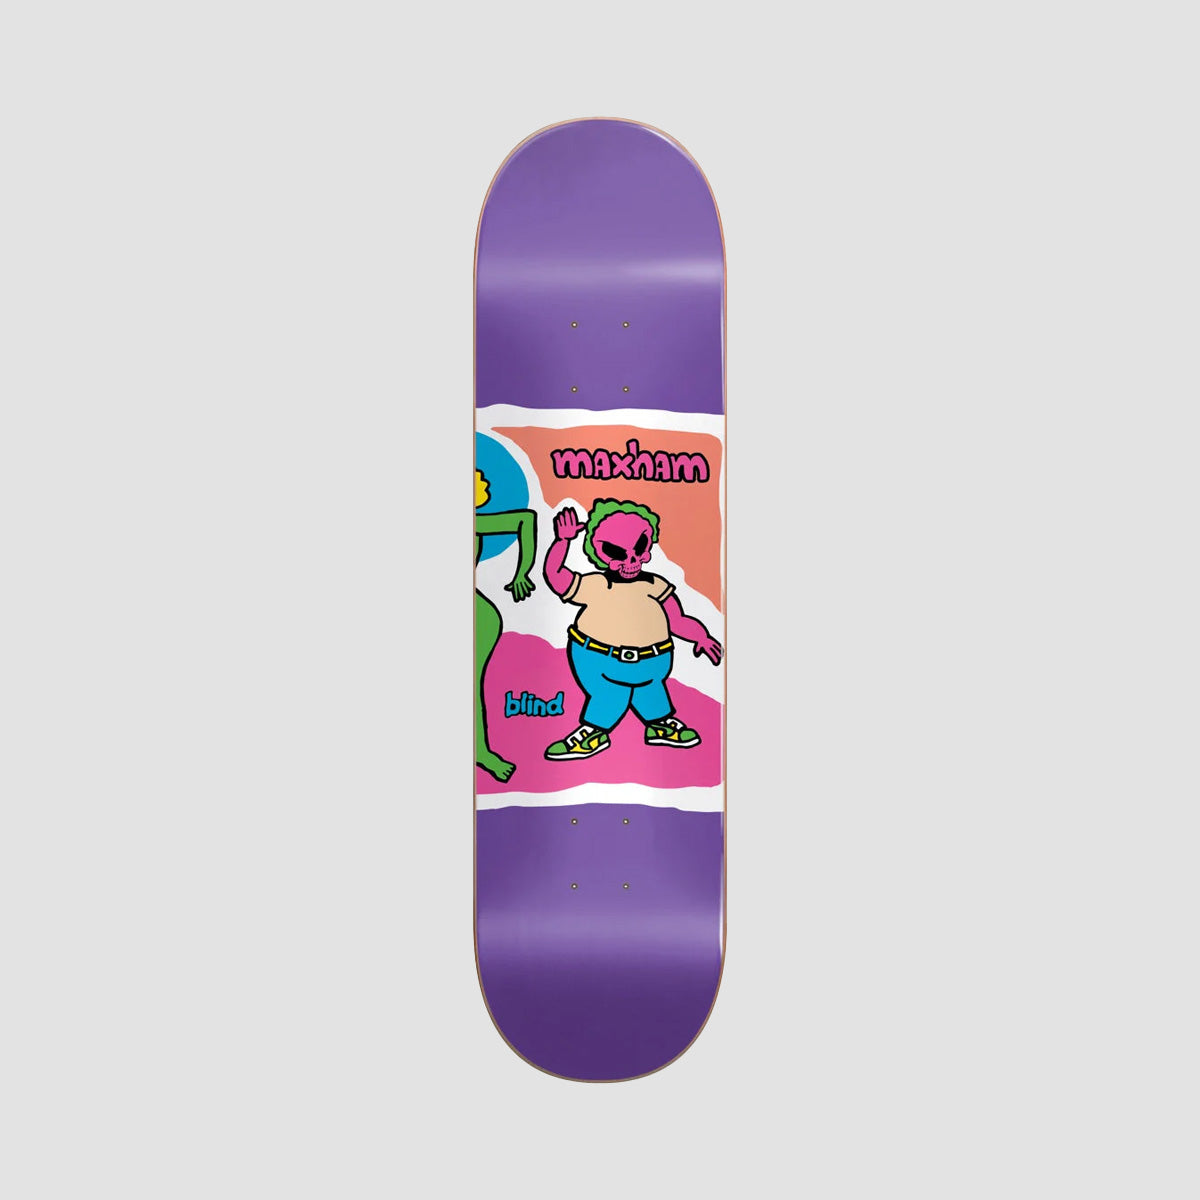 Blind Color Portrait Super Sap R7 Skateboard Deck Jordan Maxham - 8.5"